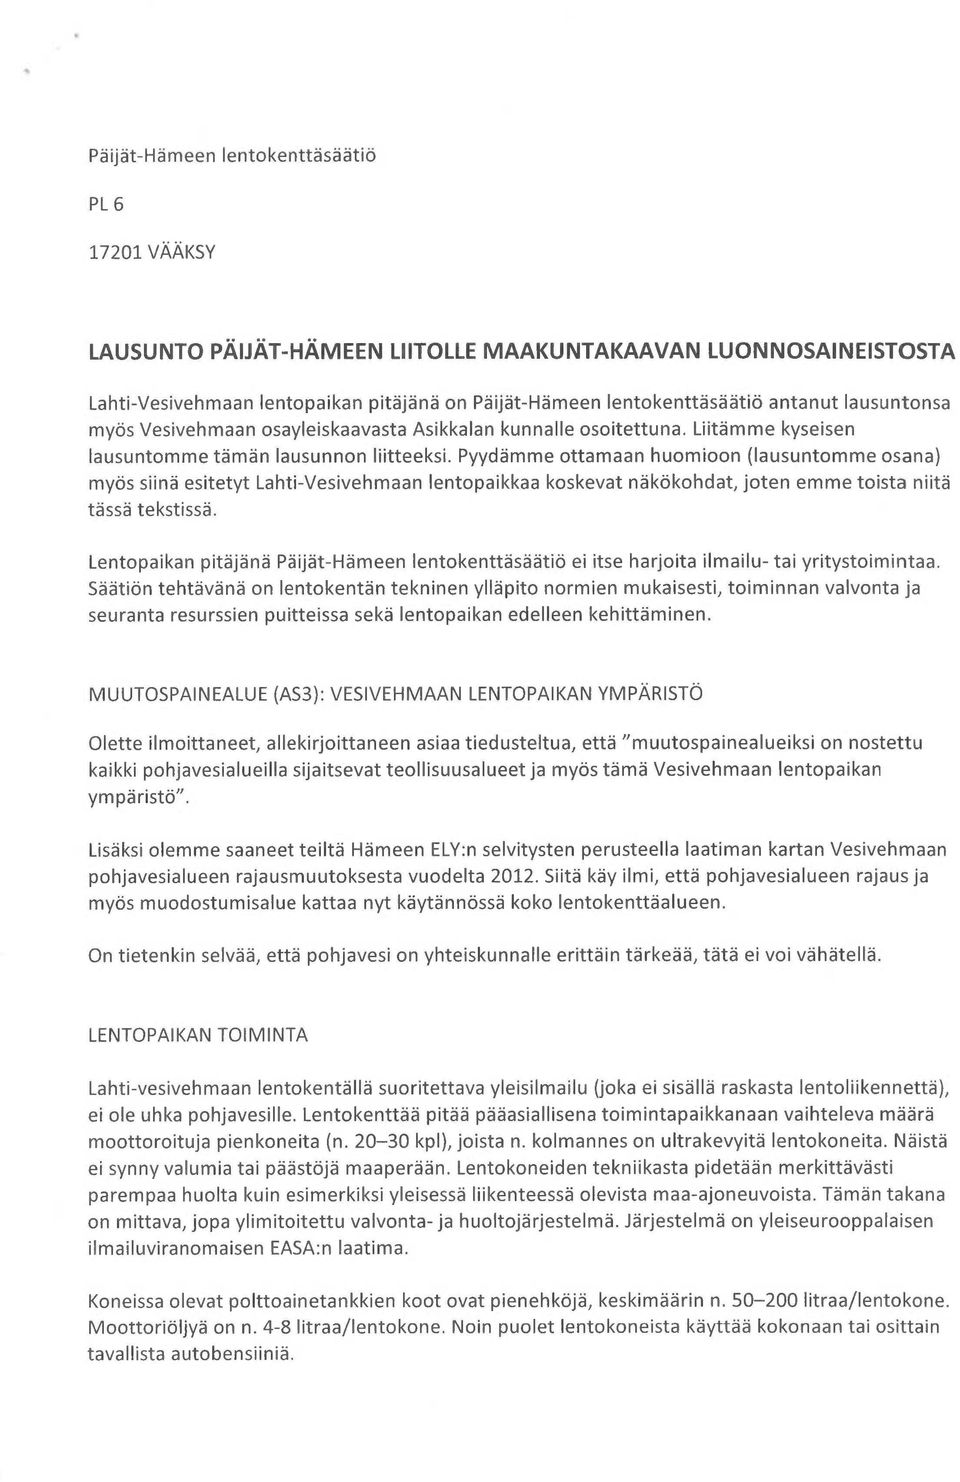 Pyydämme ottamaan huomioon (lausuntomme osana) myös siinä esitetyt Lahti-Vesivehmaan lentopaikkaa koskevat näkökohdat, joten emme toista niitä tässä tekstissä.